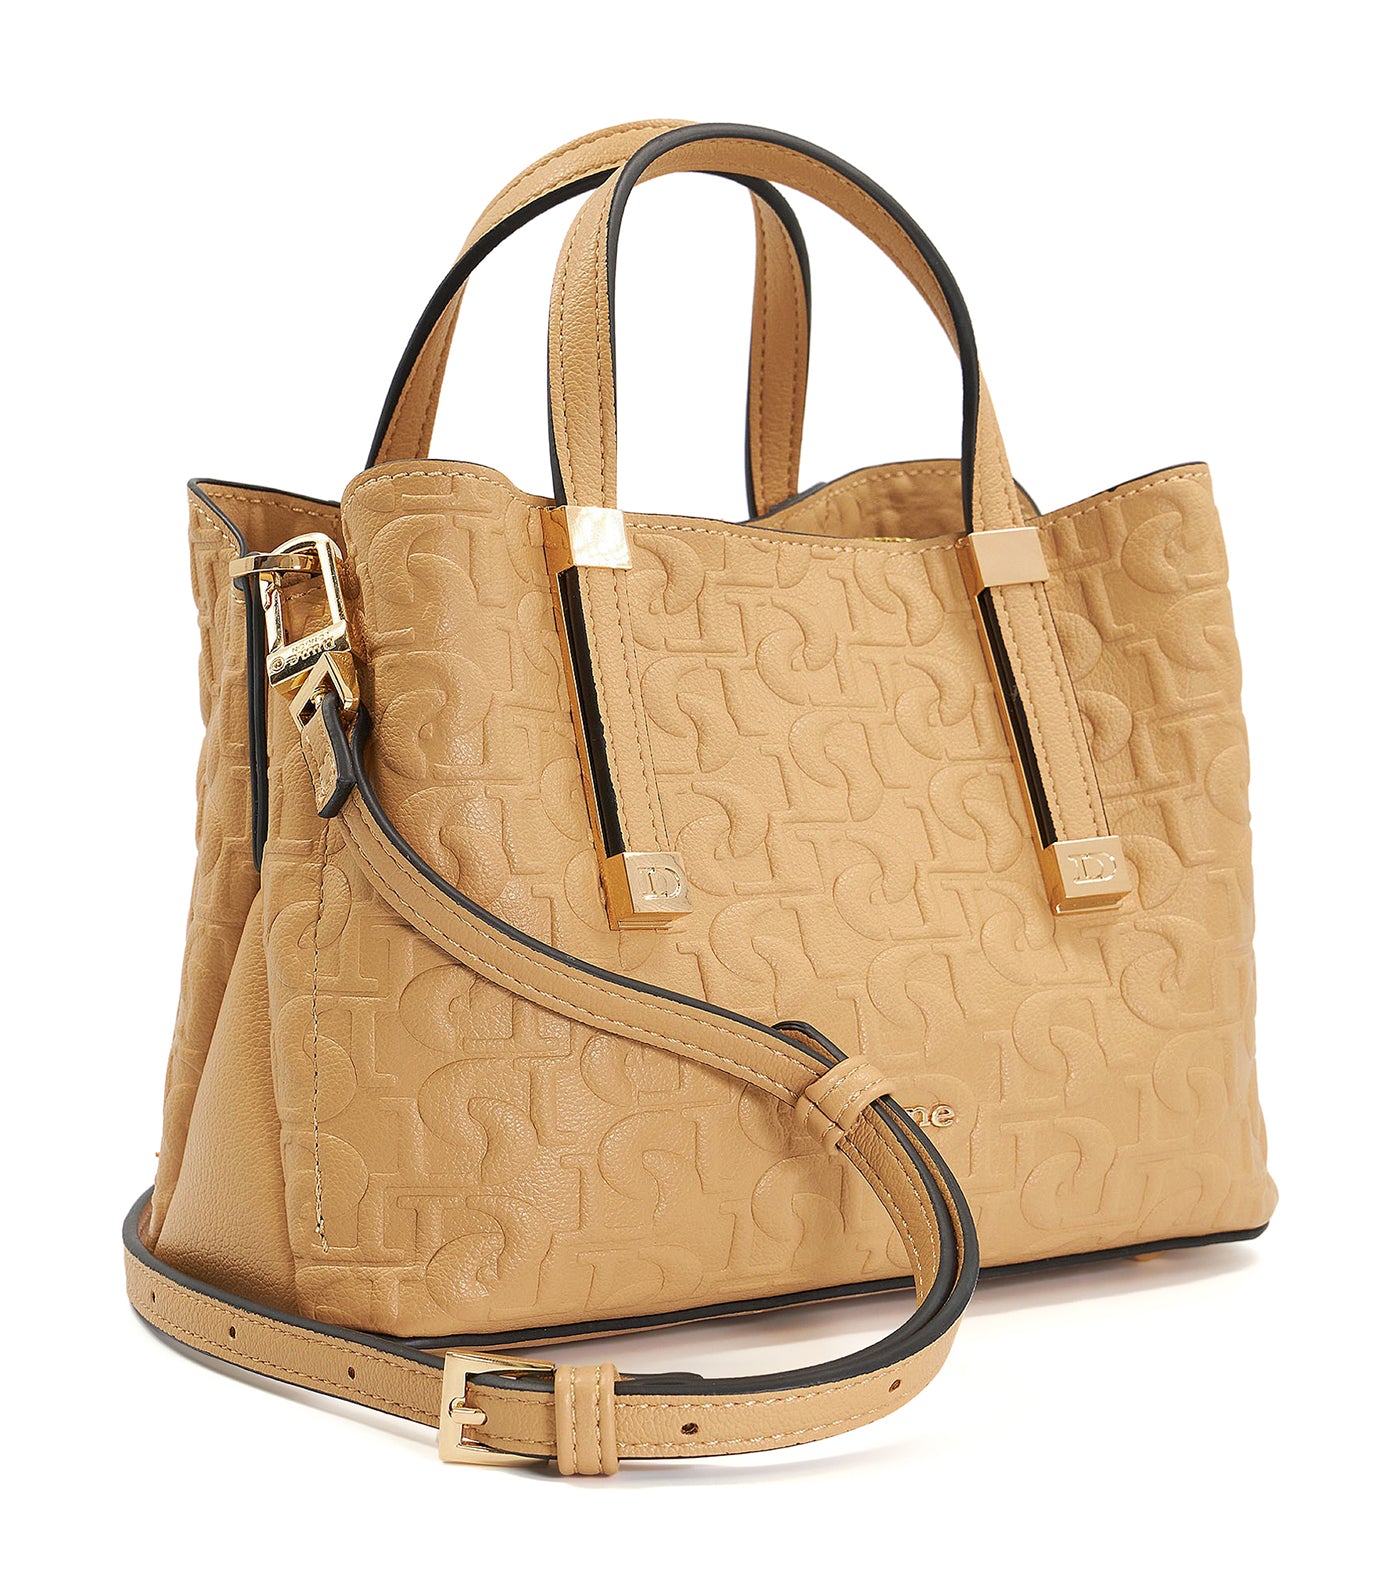 Dinkiedorrie Top Handle Bag Camel-Synthetic